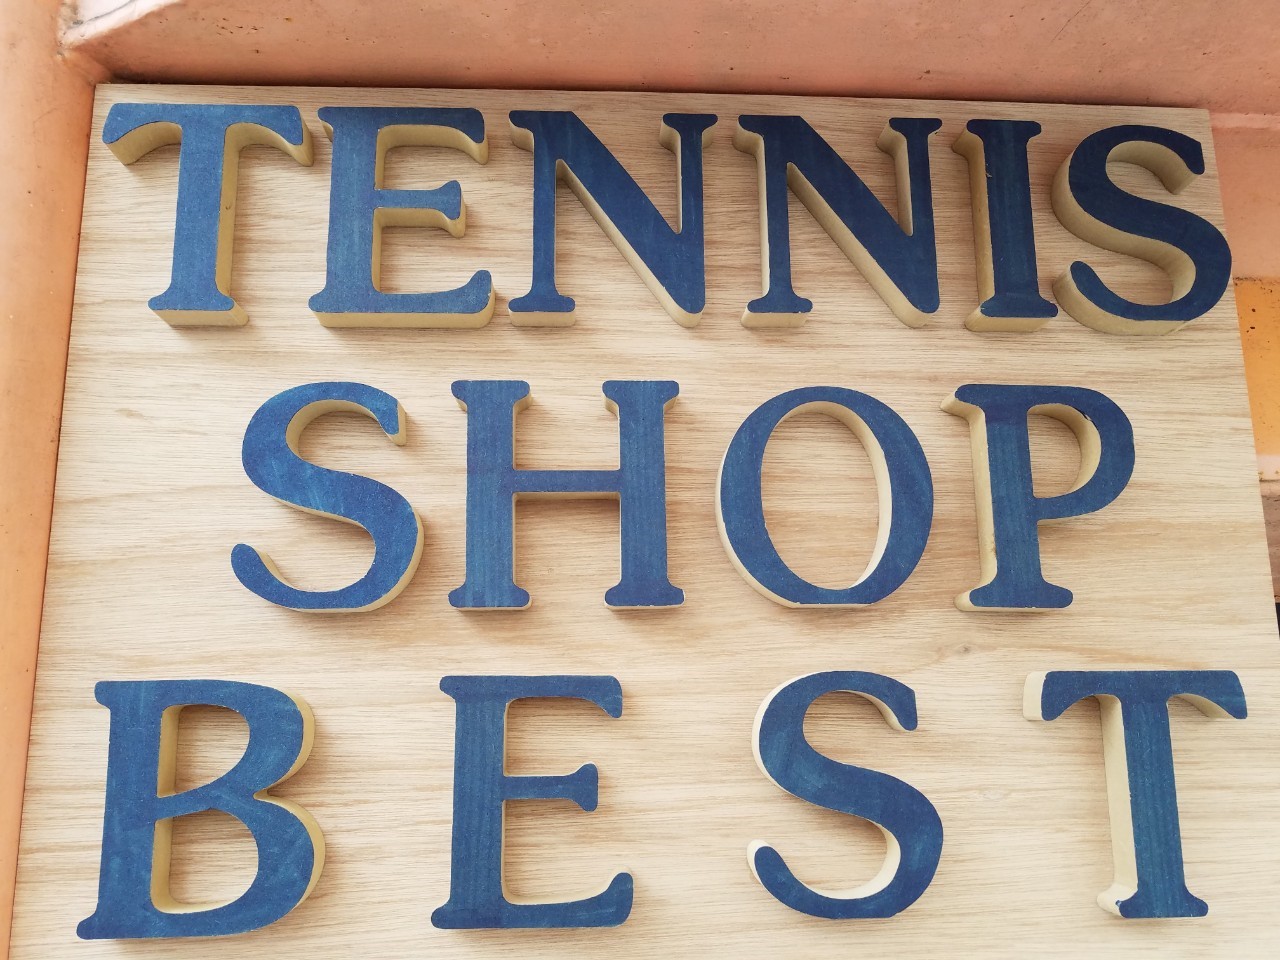 Ȗ؎sEejXVbvxXg Tennis Shop BEST